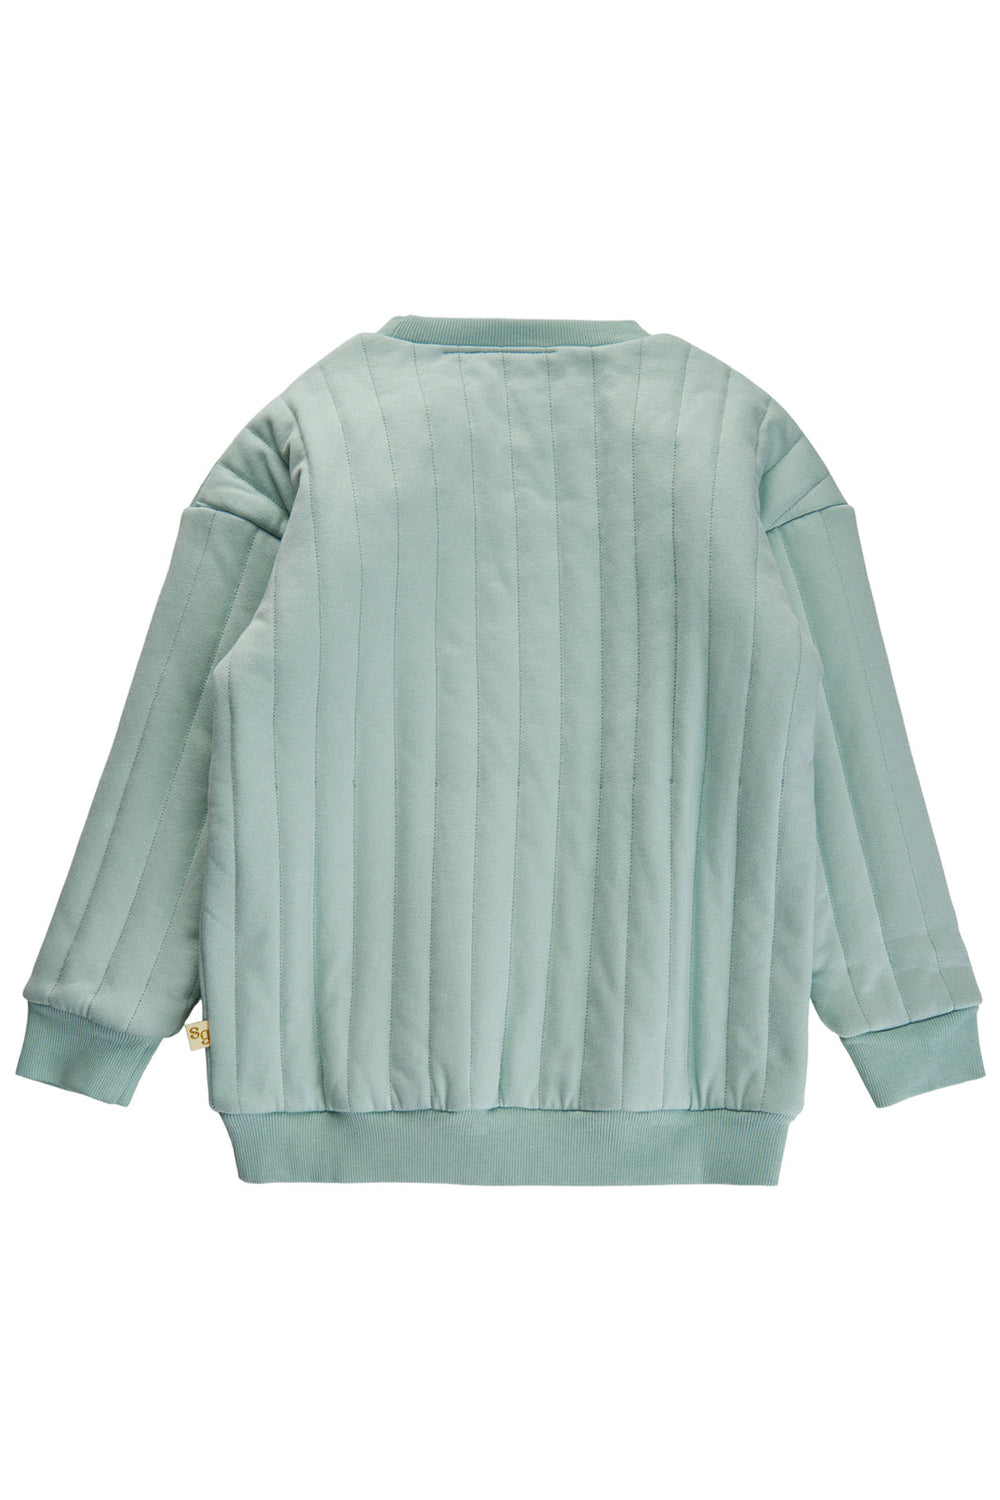 Soft Gallery - Sgkim Quilted Sweatshirt - Blue Haze Sweatshirts 